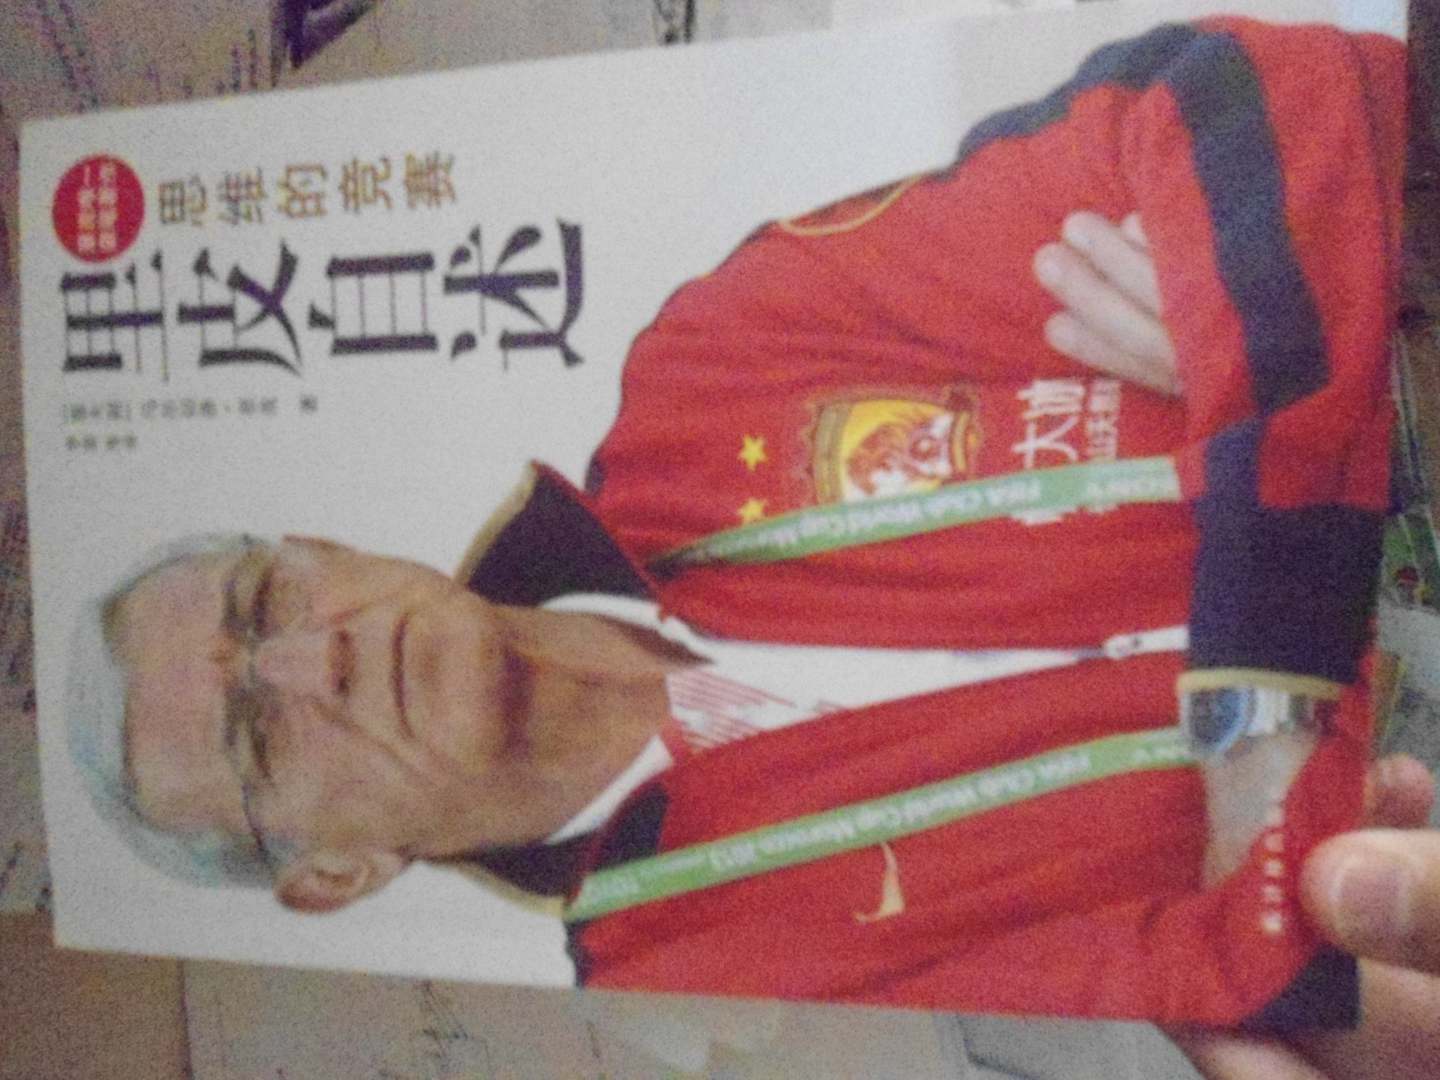 本书讲述了里皮先生对比赛的理解，对团队作战的一些见解，和他对恒大、及中国足球的看法！非常不错的一本书！